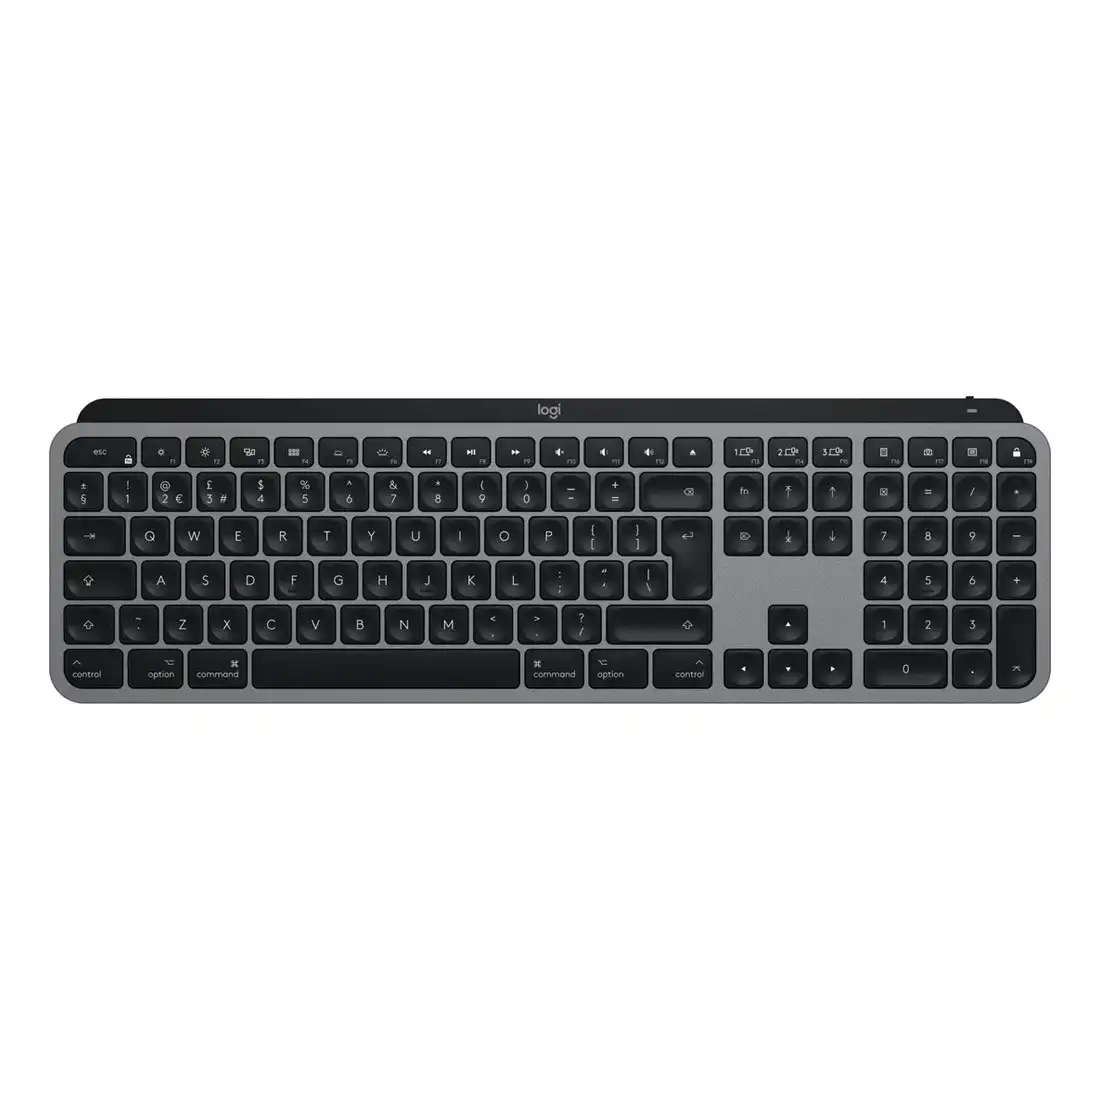 Logitech MX Keys Advanced Wireless Keyboard for Mac - Space Grey